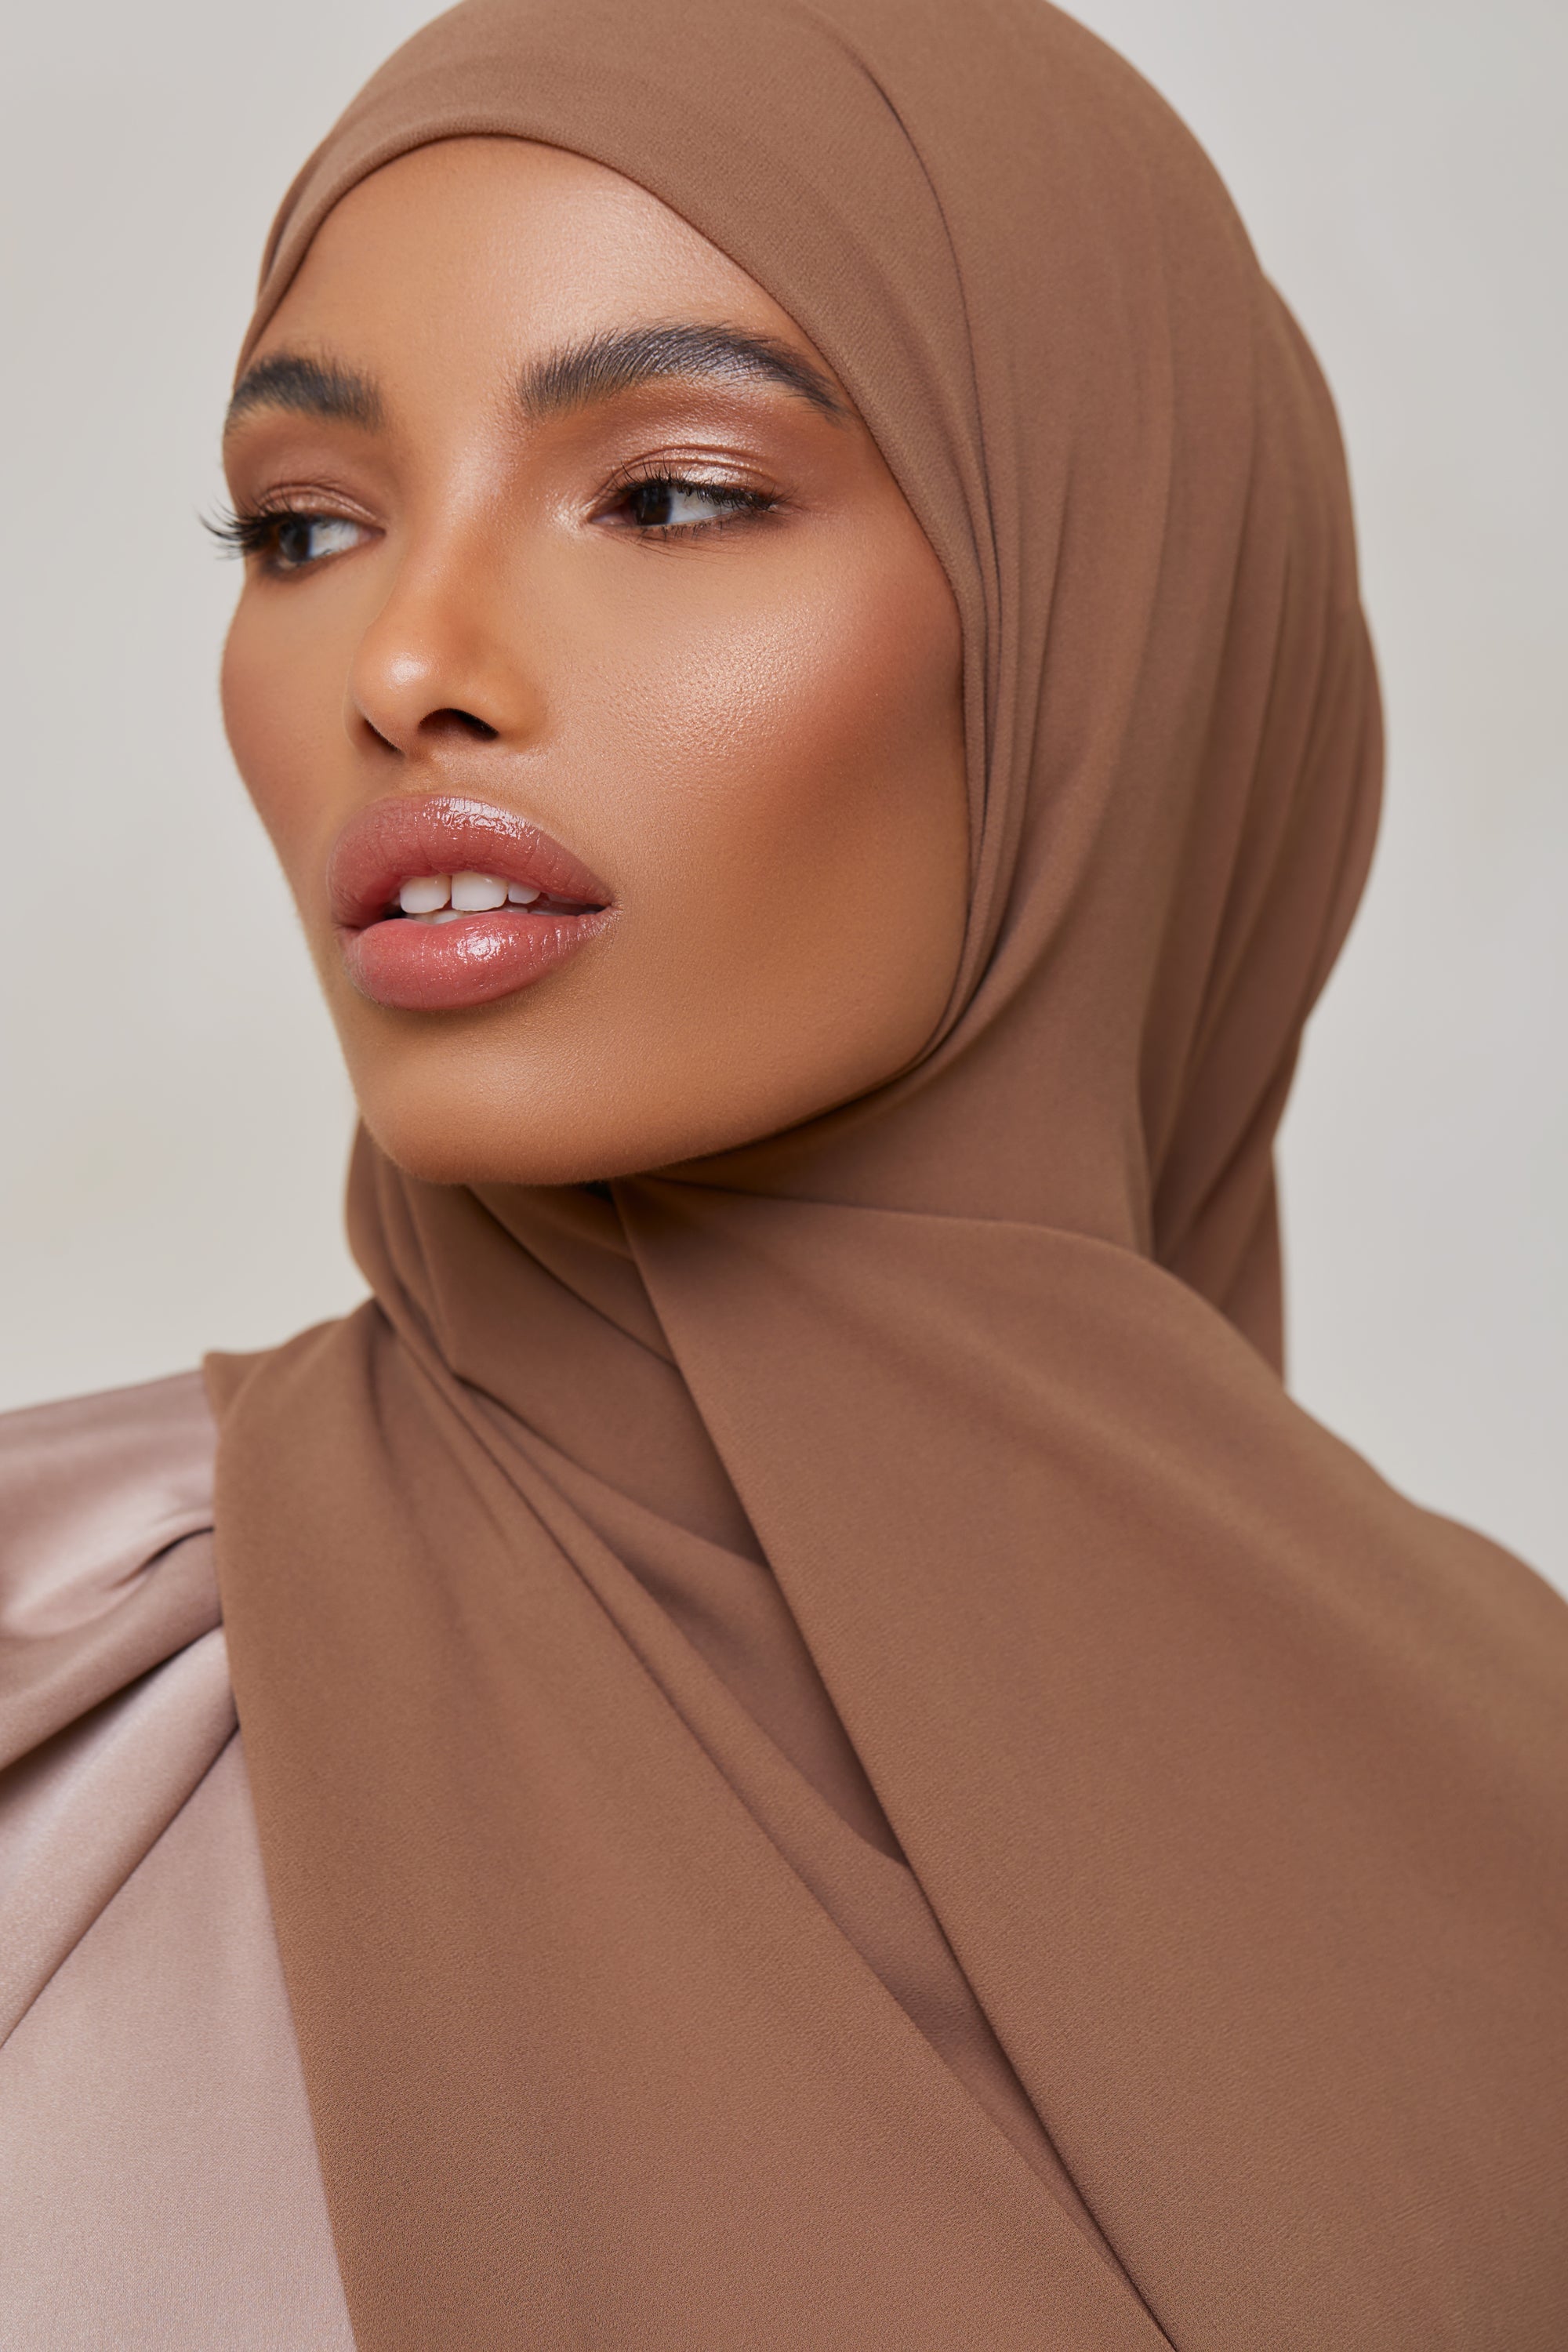 Essential Chiffon Hijab - Tawny Scarves & Shawls epschoolboard 